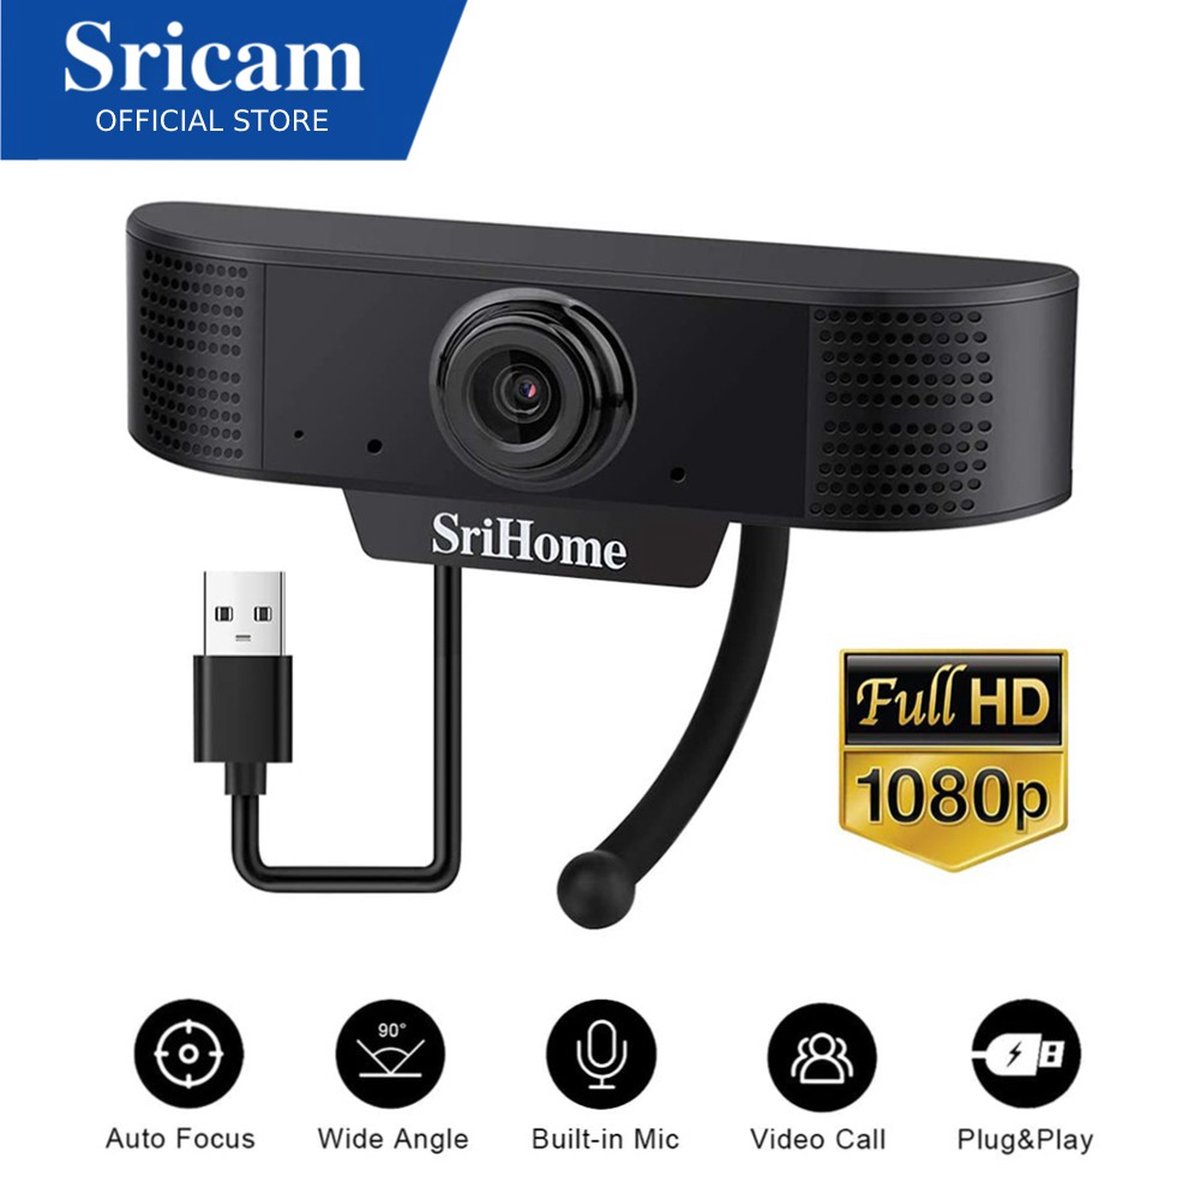 TeleBeni Srihome 2MP FULL HD 1080P Plug & Play Usb Webcam Usb 2.0 Gratis Driver Pc Camera Webcam Usb Met Mic Microfoon Voor desktop/Laptop ideaal voor thuiswerken op hoog niveau enorm scherp beeld namelijk 2MegaPixel dus geschikt voor 55inch